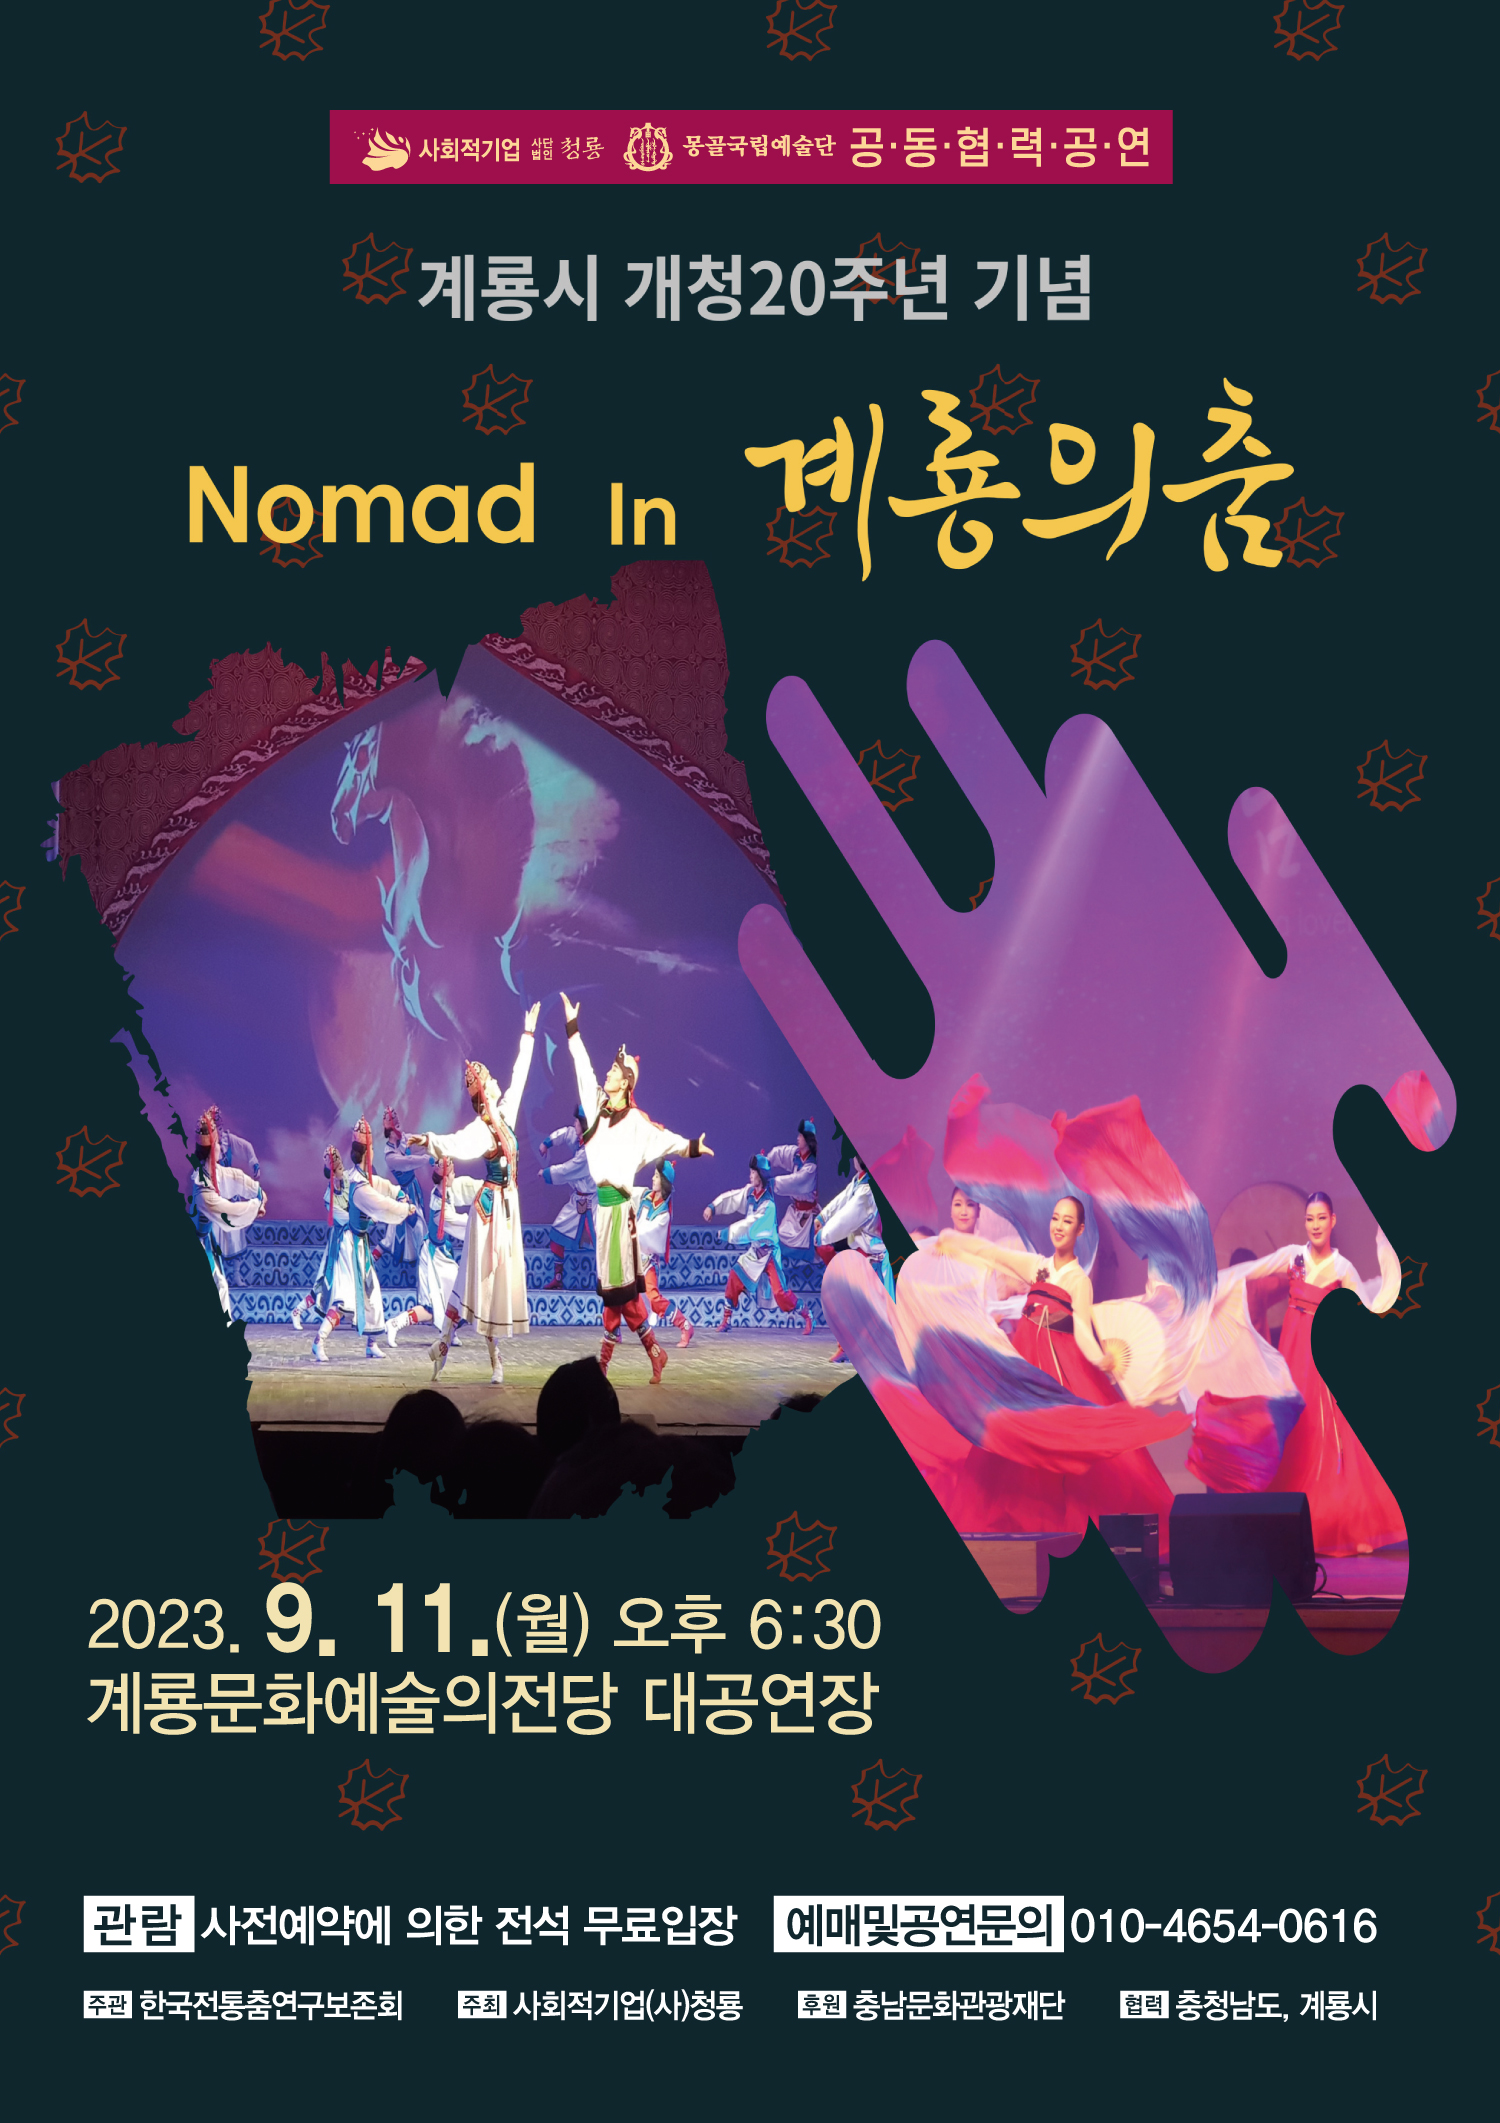 Nomad In 계룡의 춤